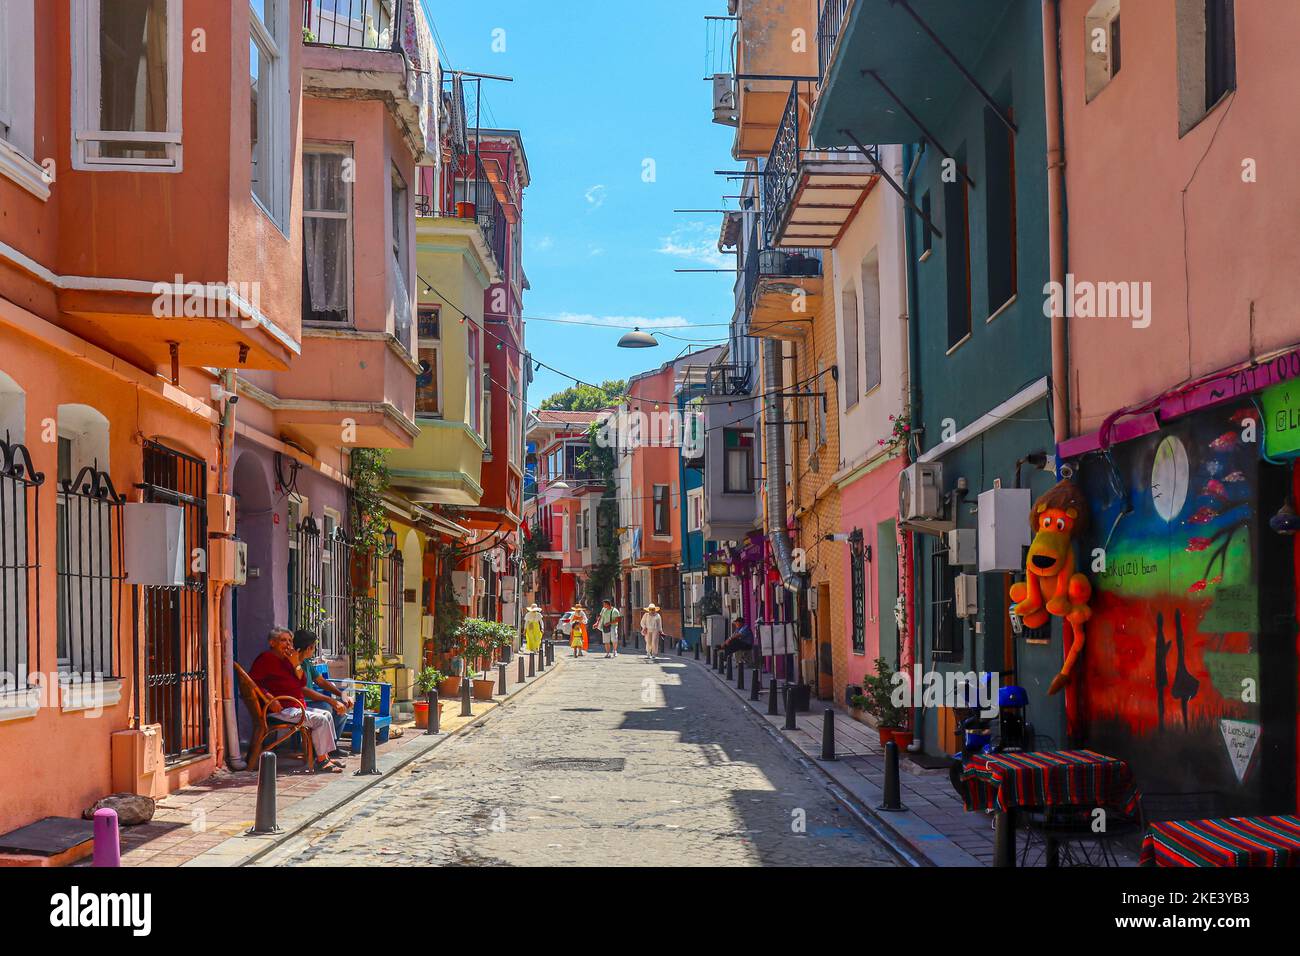 ISTANBUL/TURQUIE - 09 juillet 2022: Quartier d'istanbul avec des maisons colorées Banque D'Images